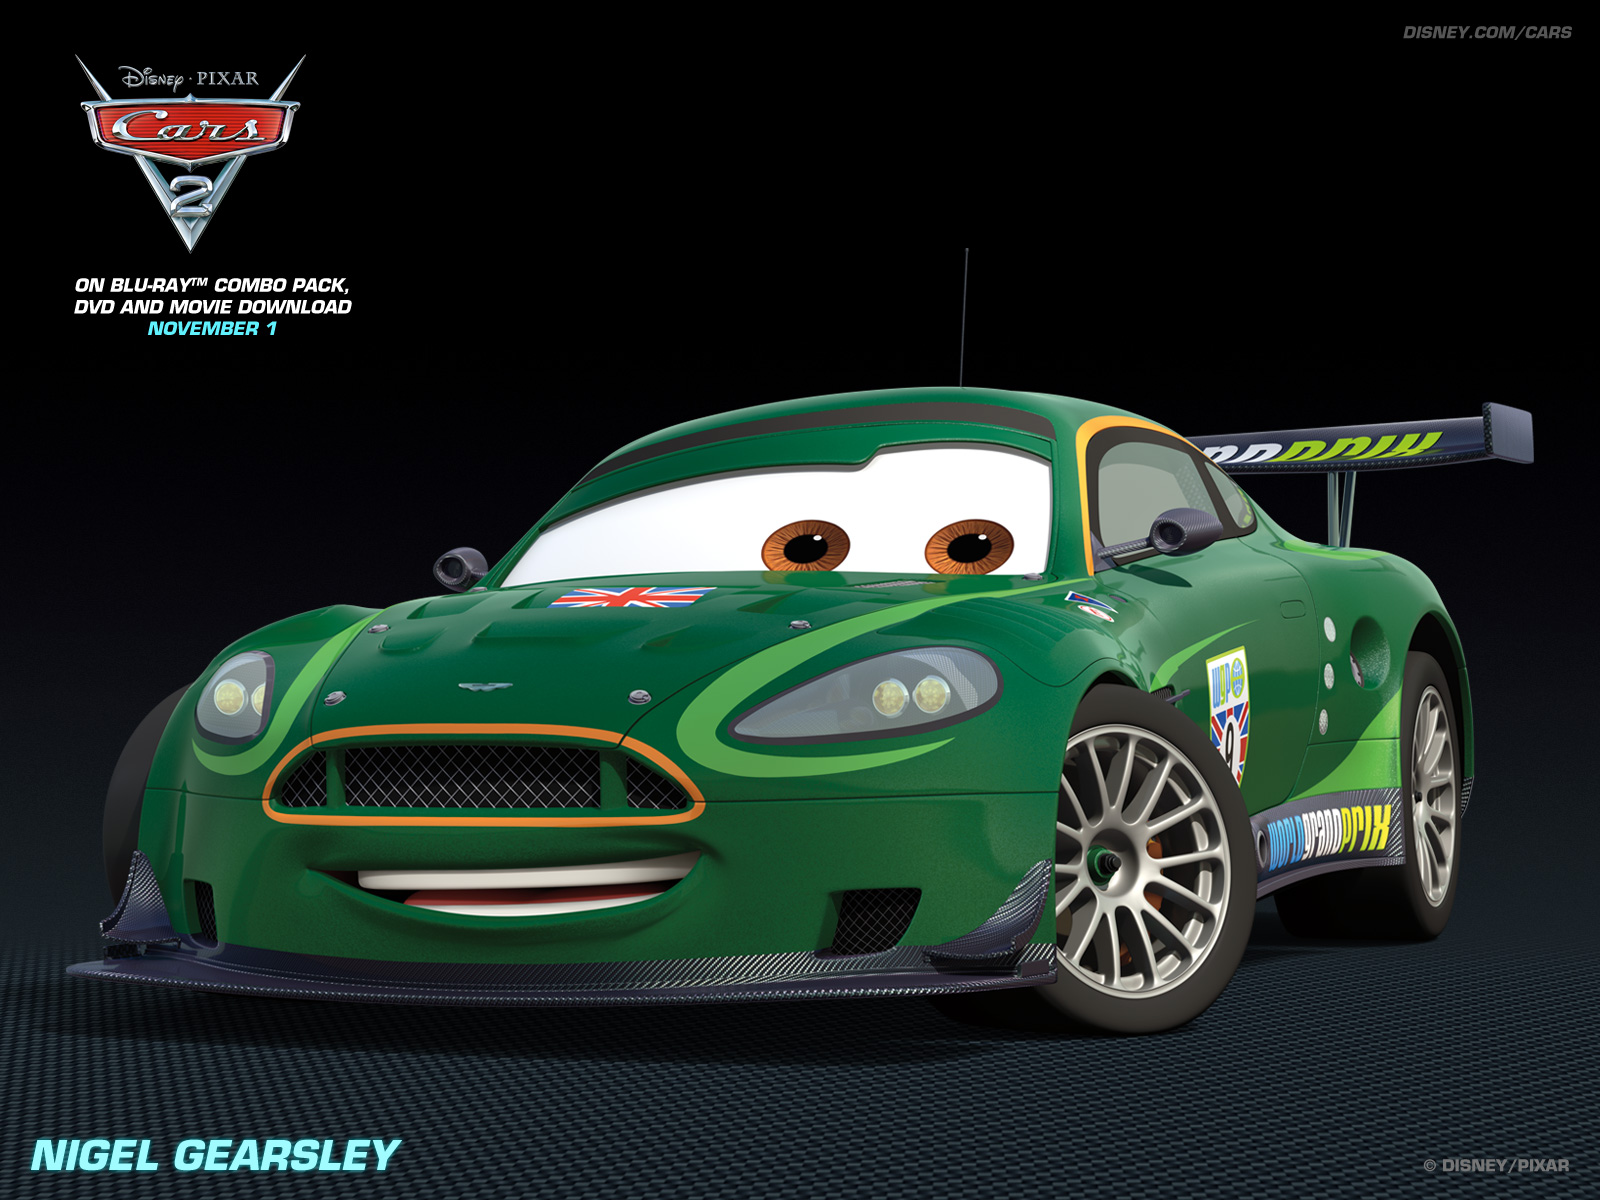 Nigel Gearsley - Disney Pixar Cars 2 Wallpaper (28262110) - Fanpop